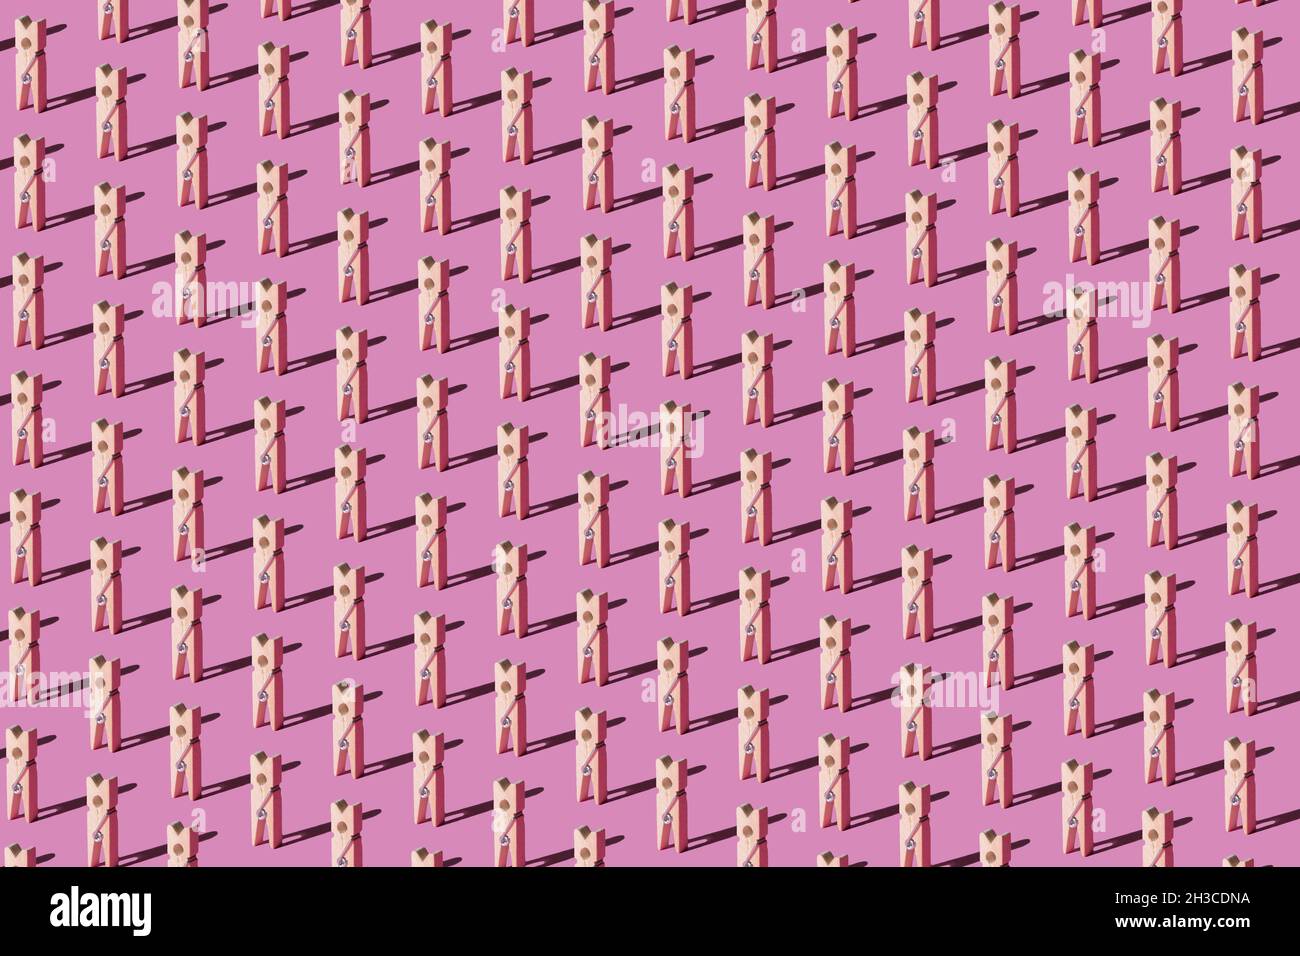 Motifs de chevilles en bois sur fond rose pastel.Vue de dessus.Concept de mode abstrait minimal. Banque D'Images